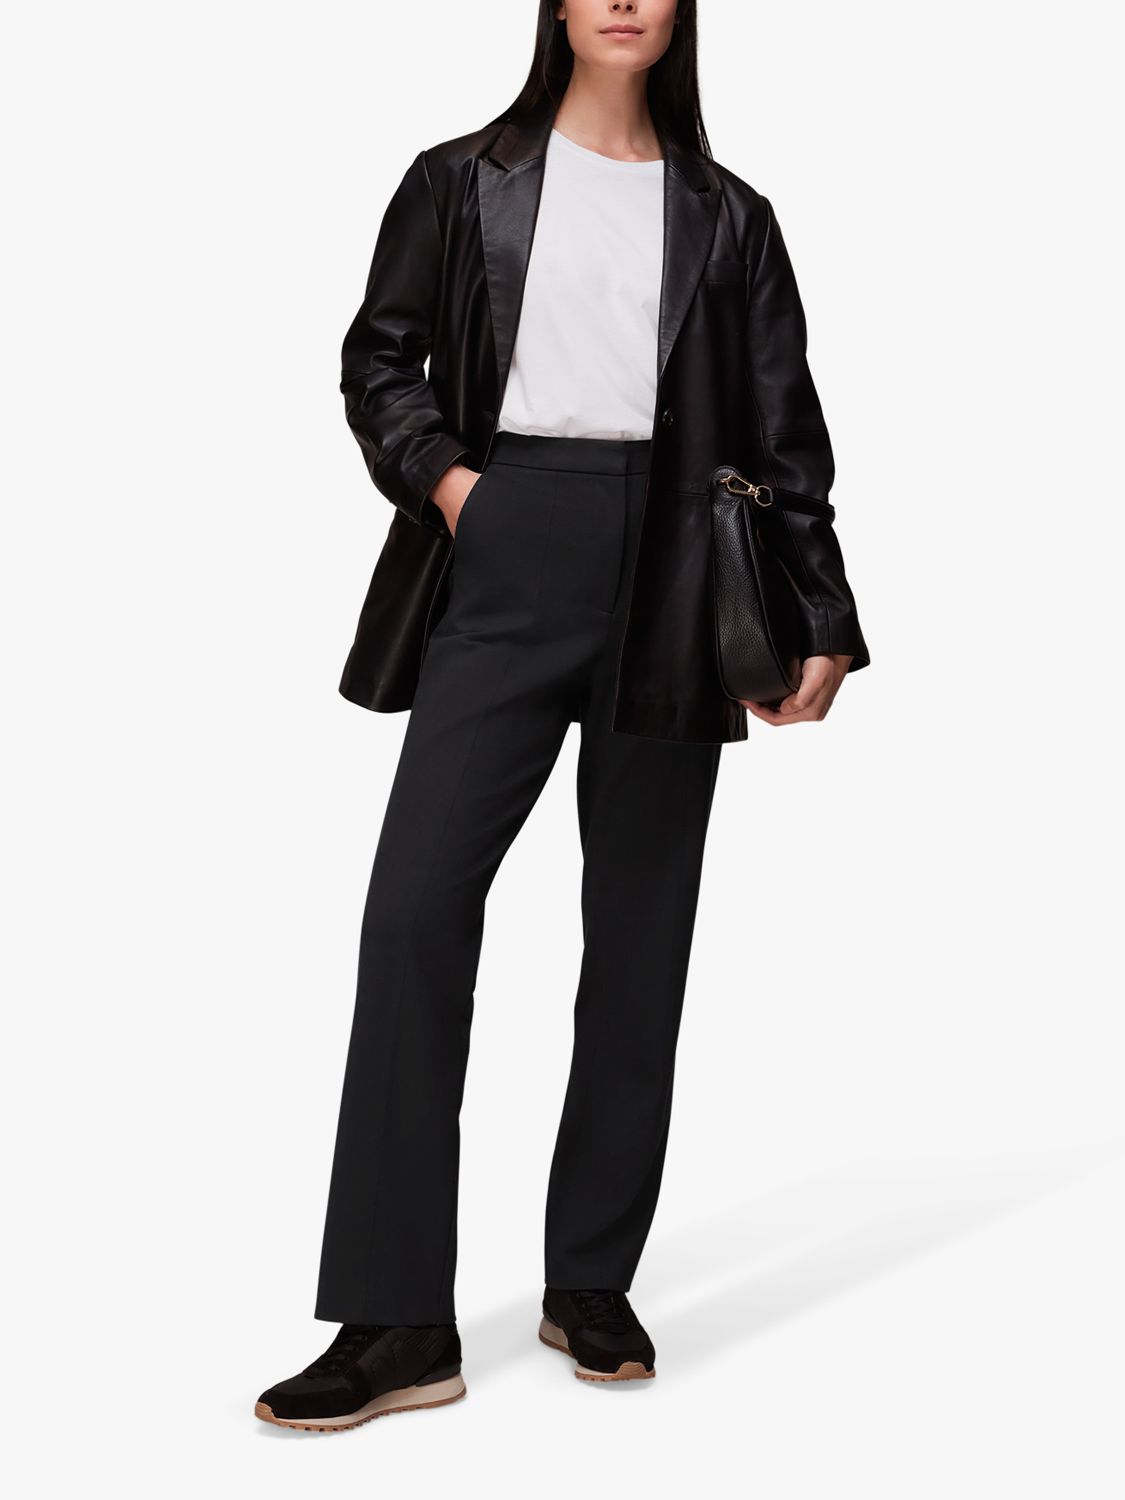 Узкие брюки Porte Whistles, черный женские узкие компрессионные брюки со средней посадкой без застежки jones new york